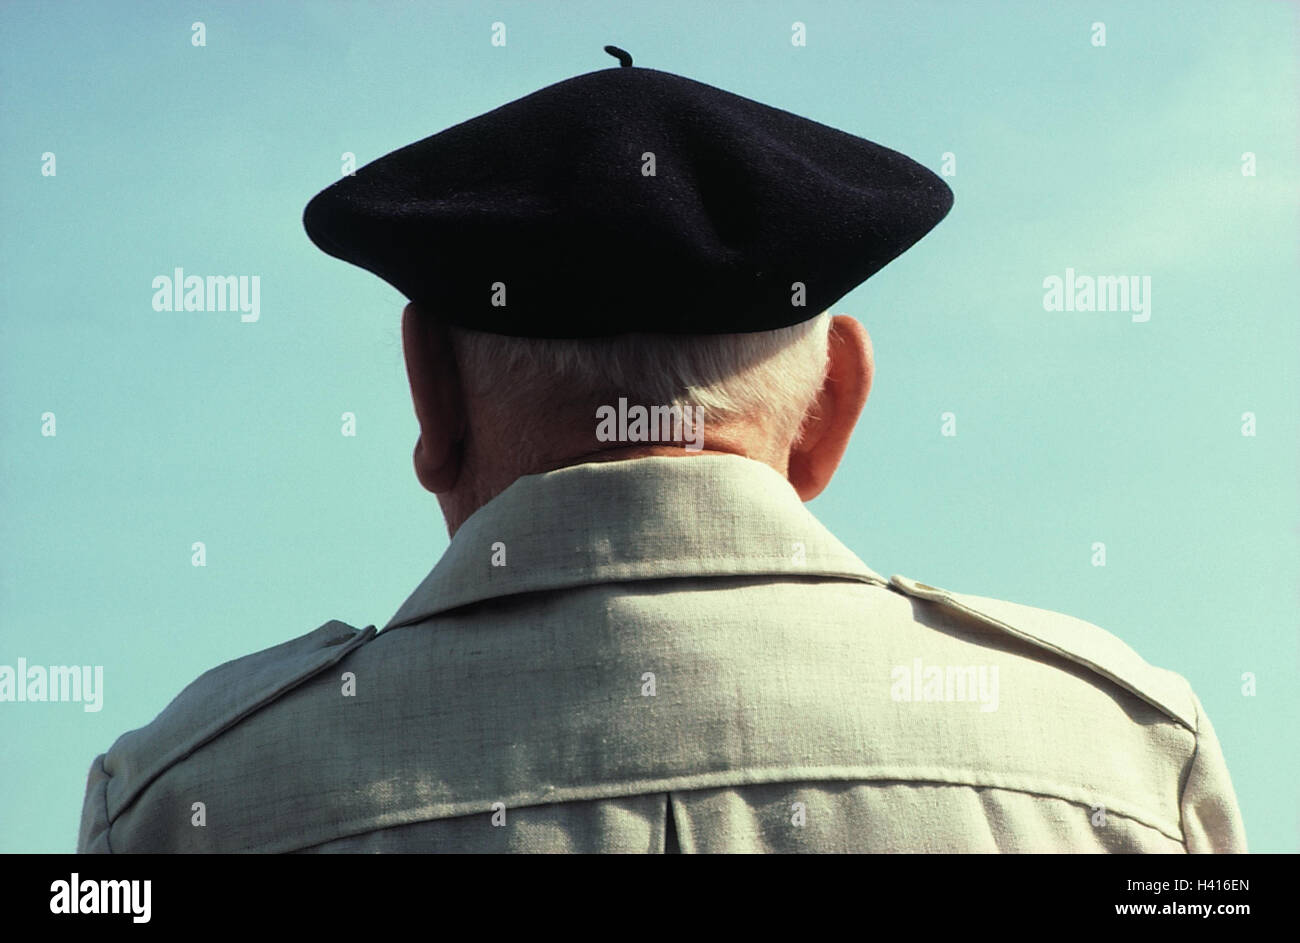 Frankreich, Senior, Baskenmütze, Rückansicht, Mann, alte, Kopfbedeckung,  Kappe, draußen Stockfotografie - Alamy